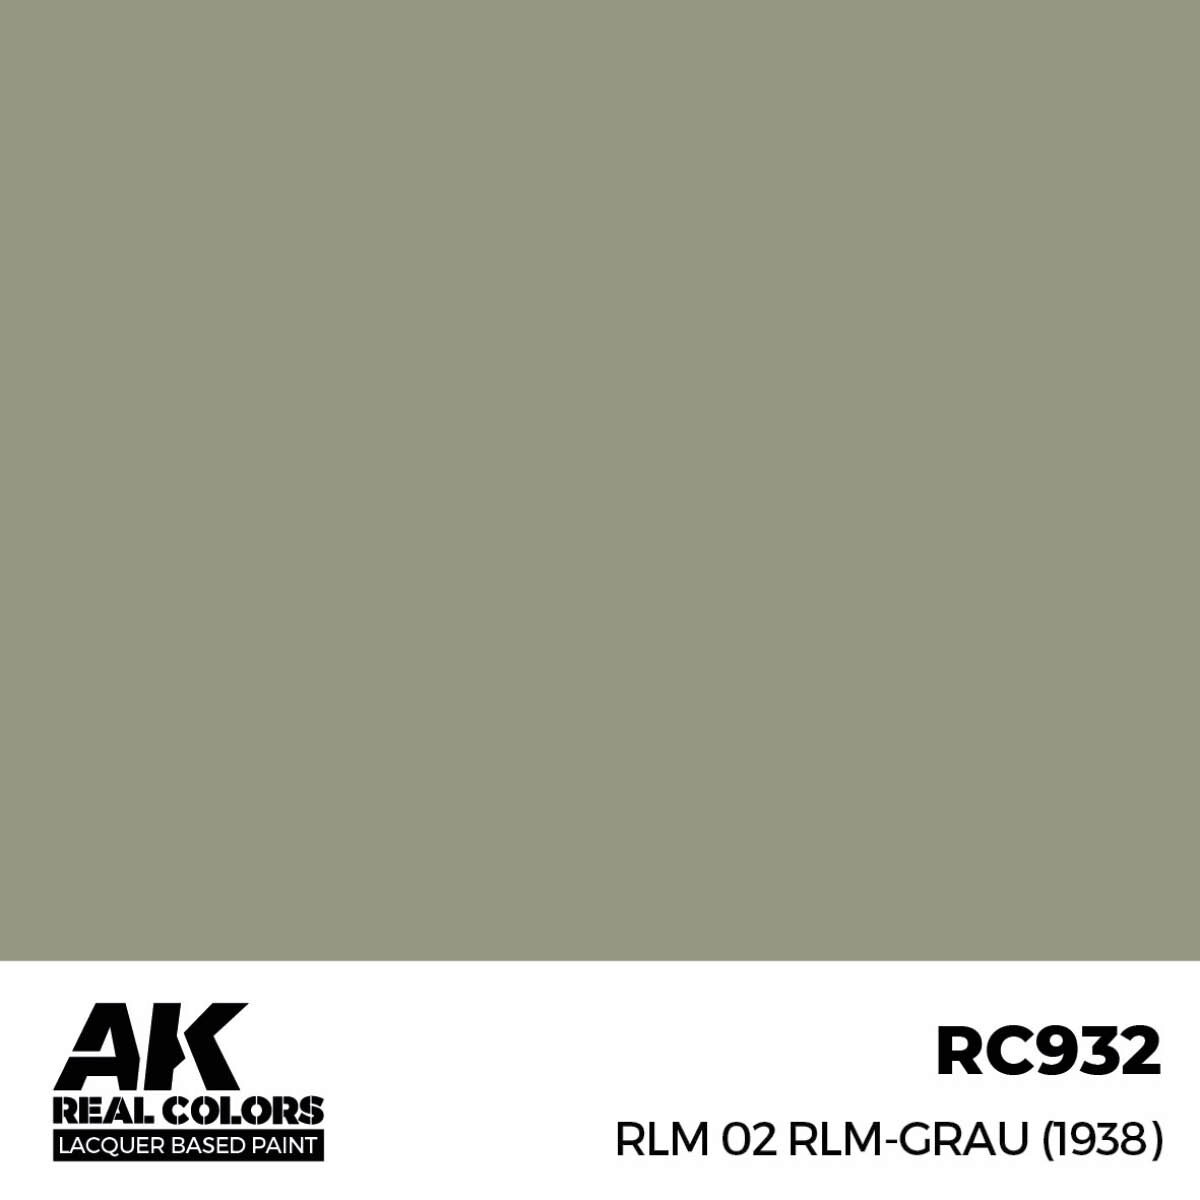 AK RC932 Real Colors RLM 02 RLM-GRAU (1938) 17 ml.